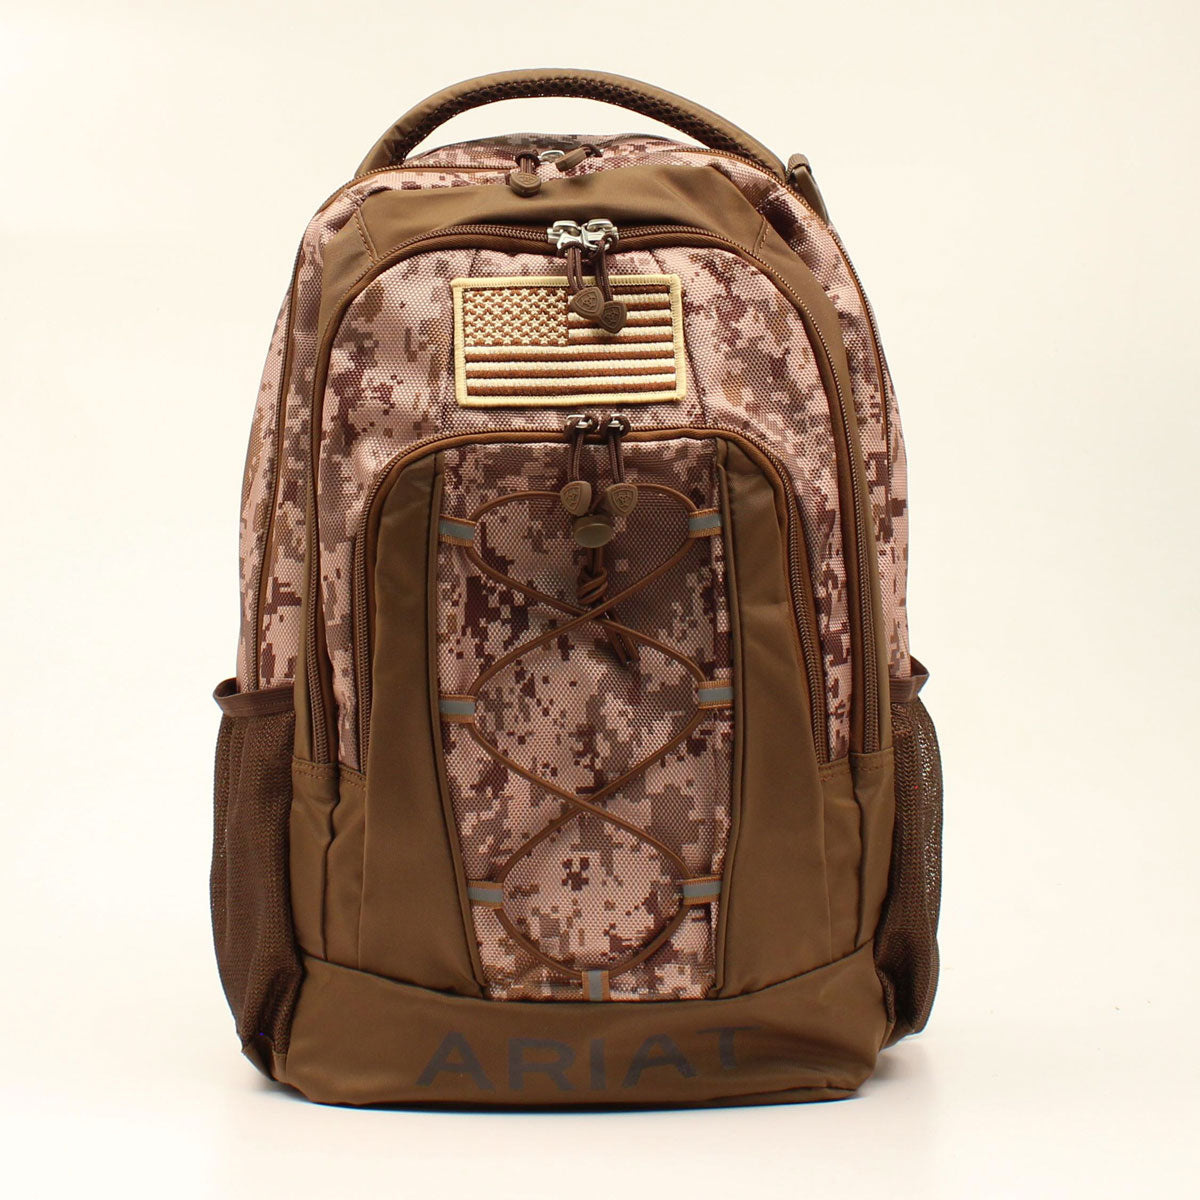 Ariat Tan/Brown Camo Print Backpack